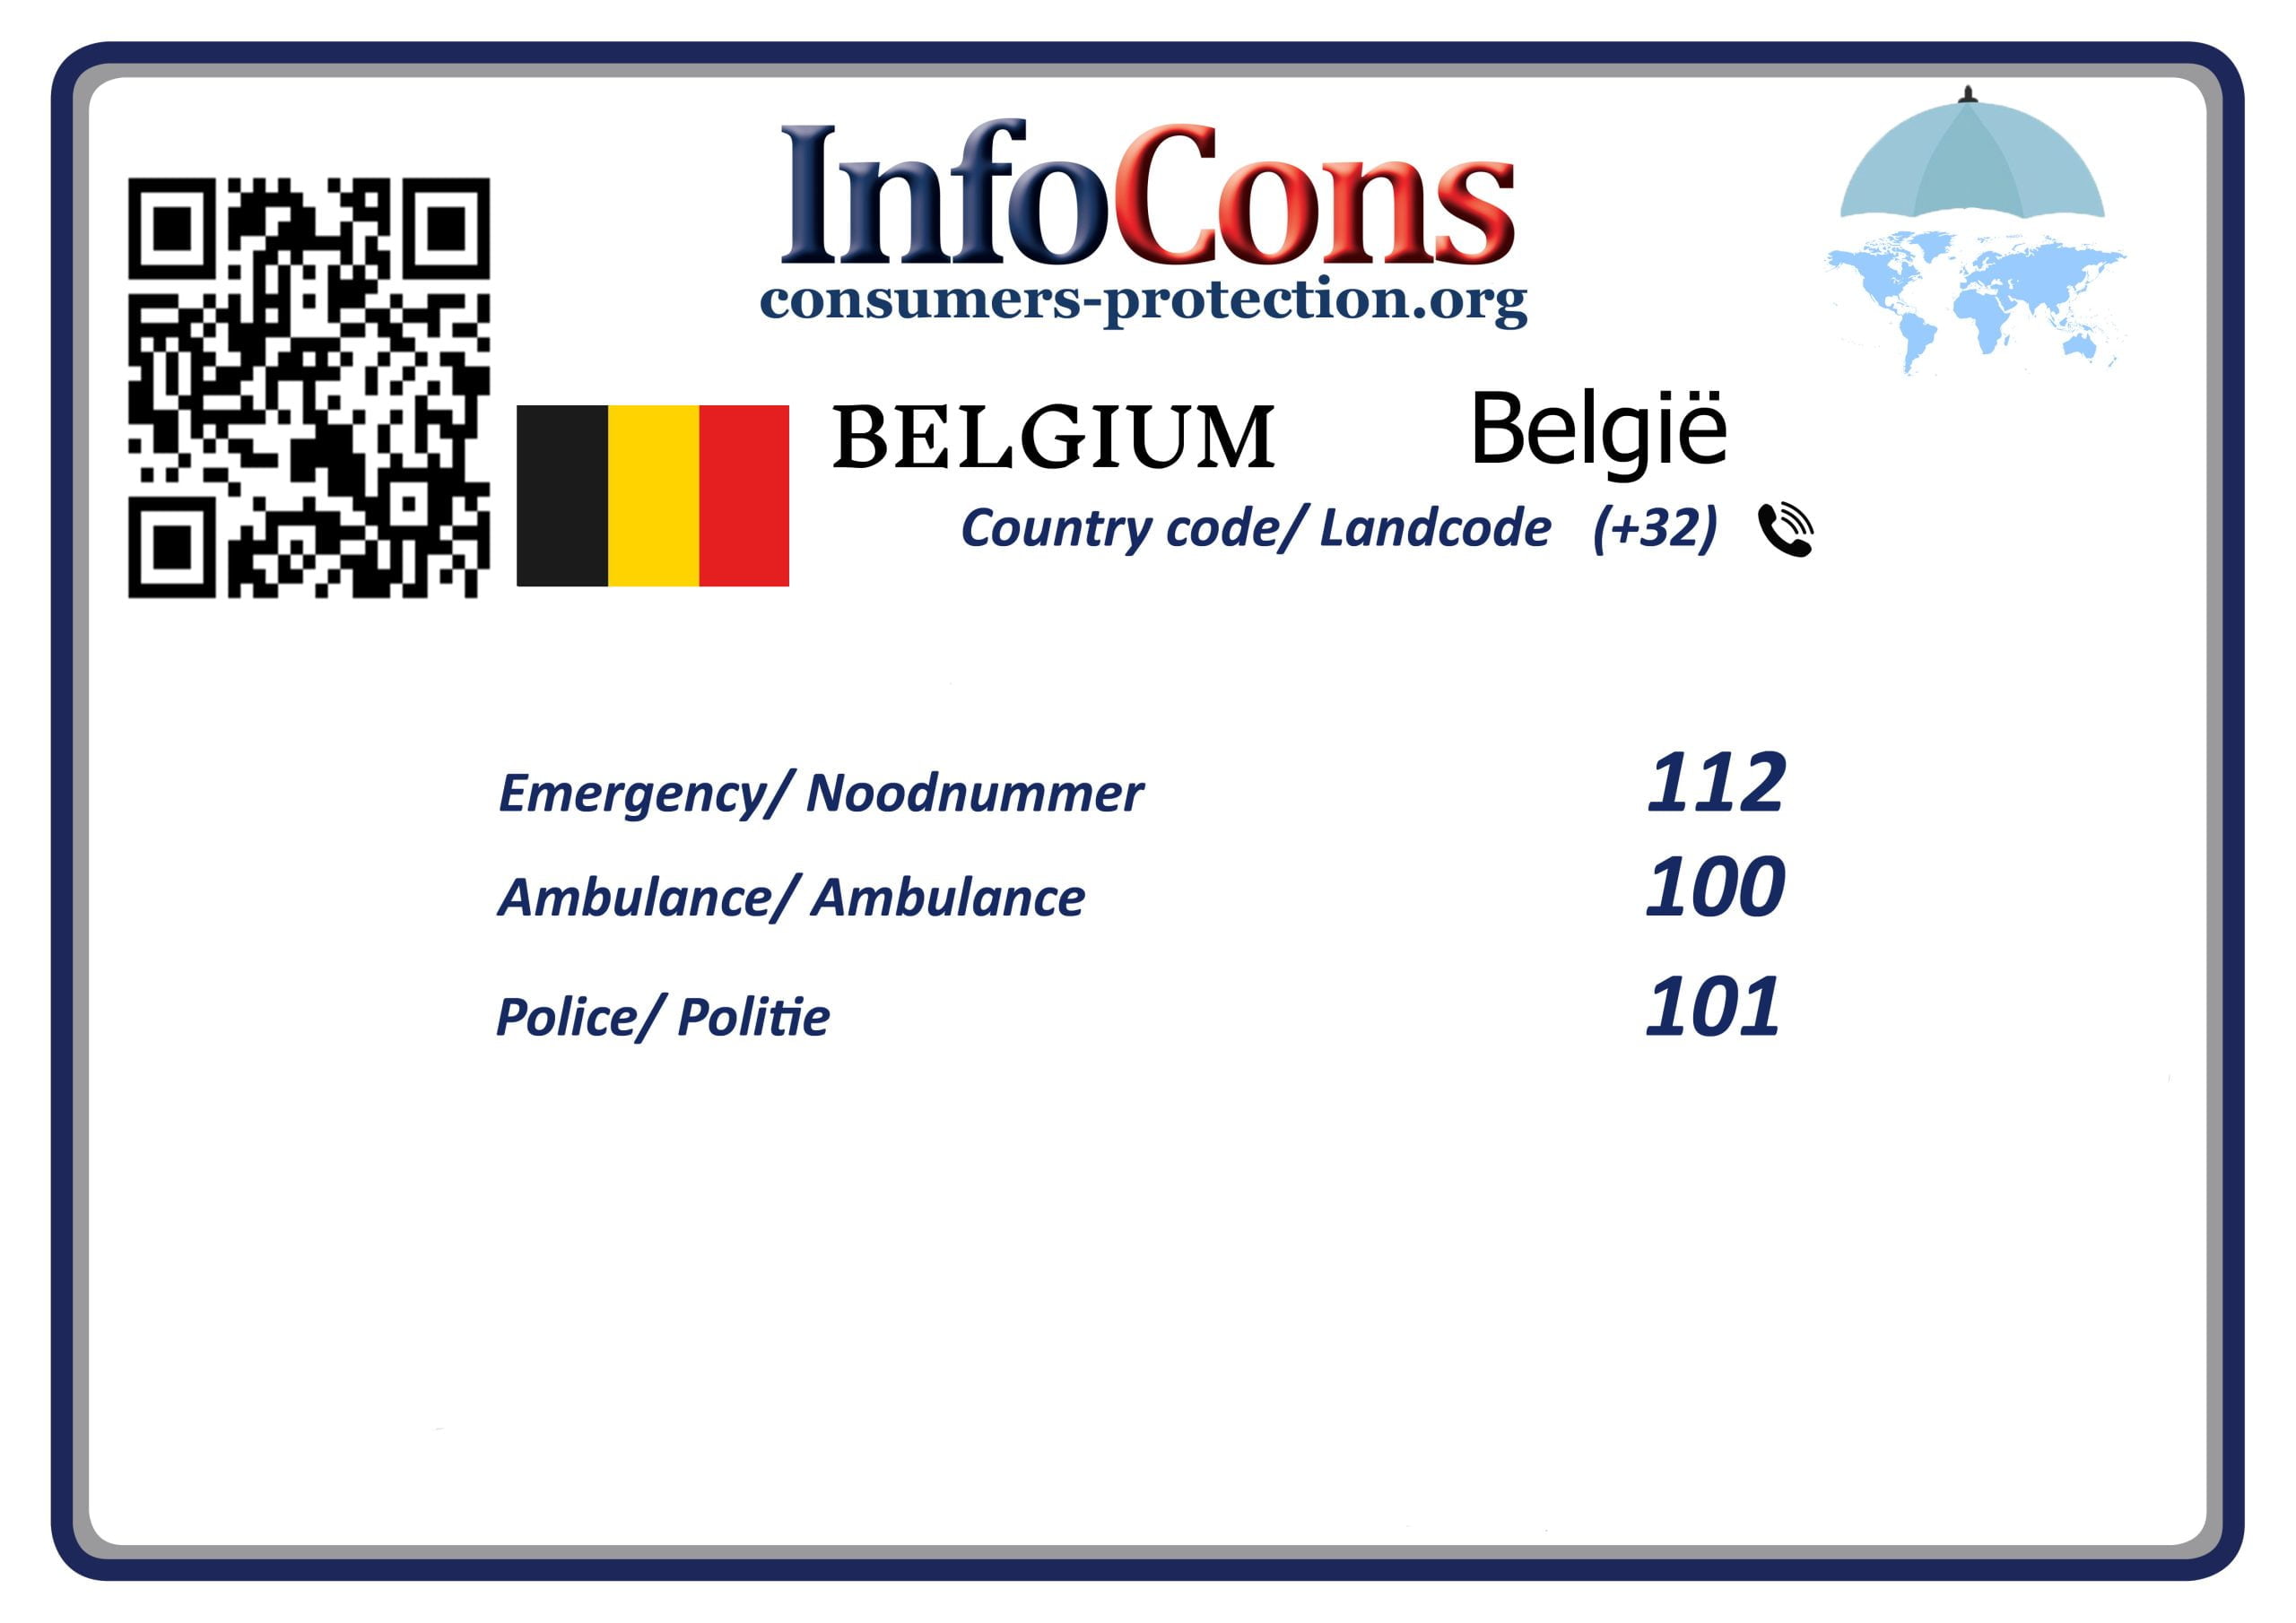 Consumentenbescherming België Consumers Protectiom Belgium